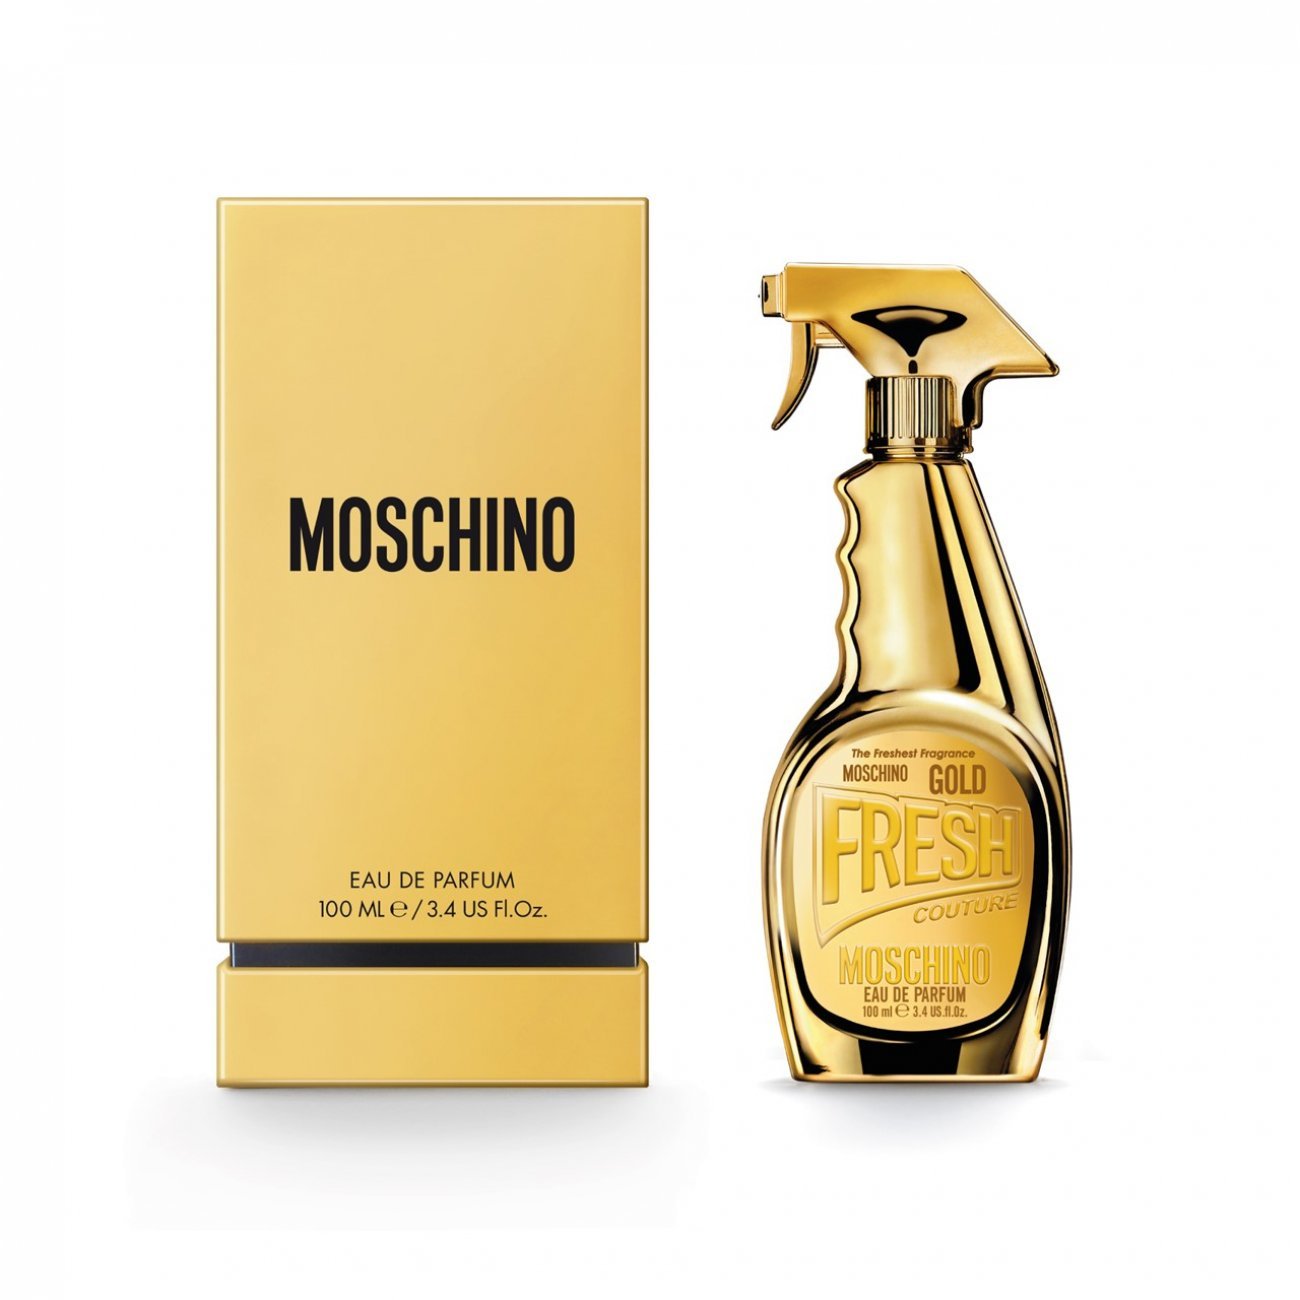 Buy Moschino Gold Fresh Couture Eau de Parfum ·